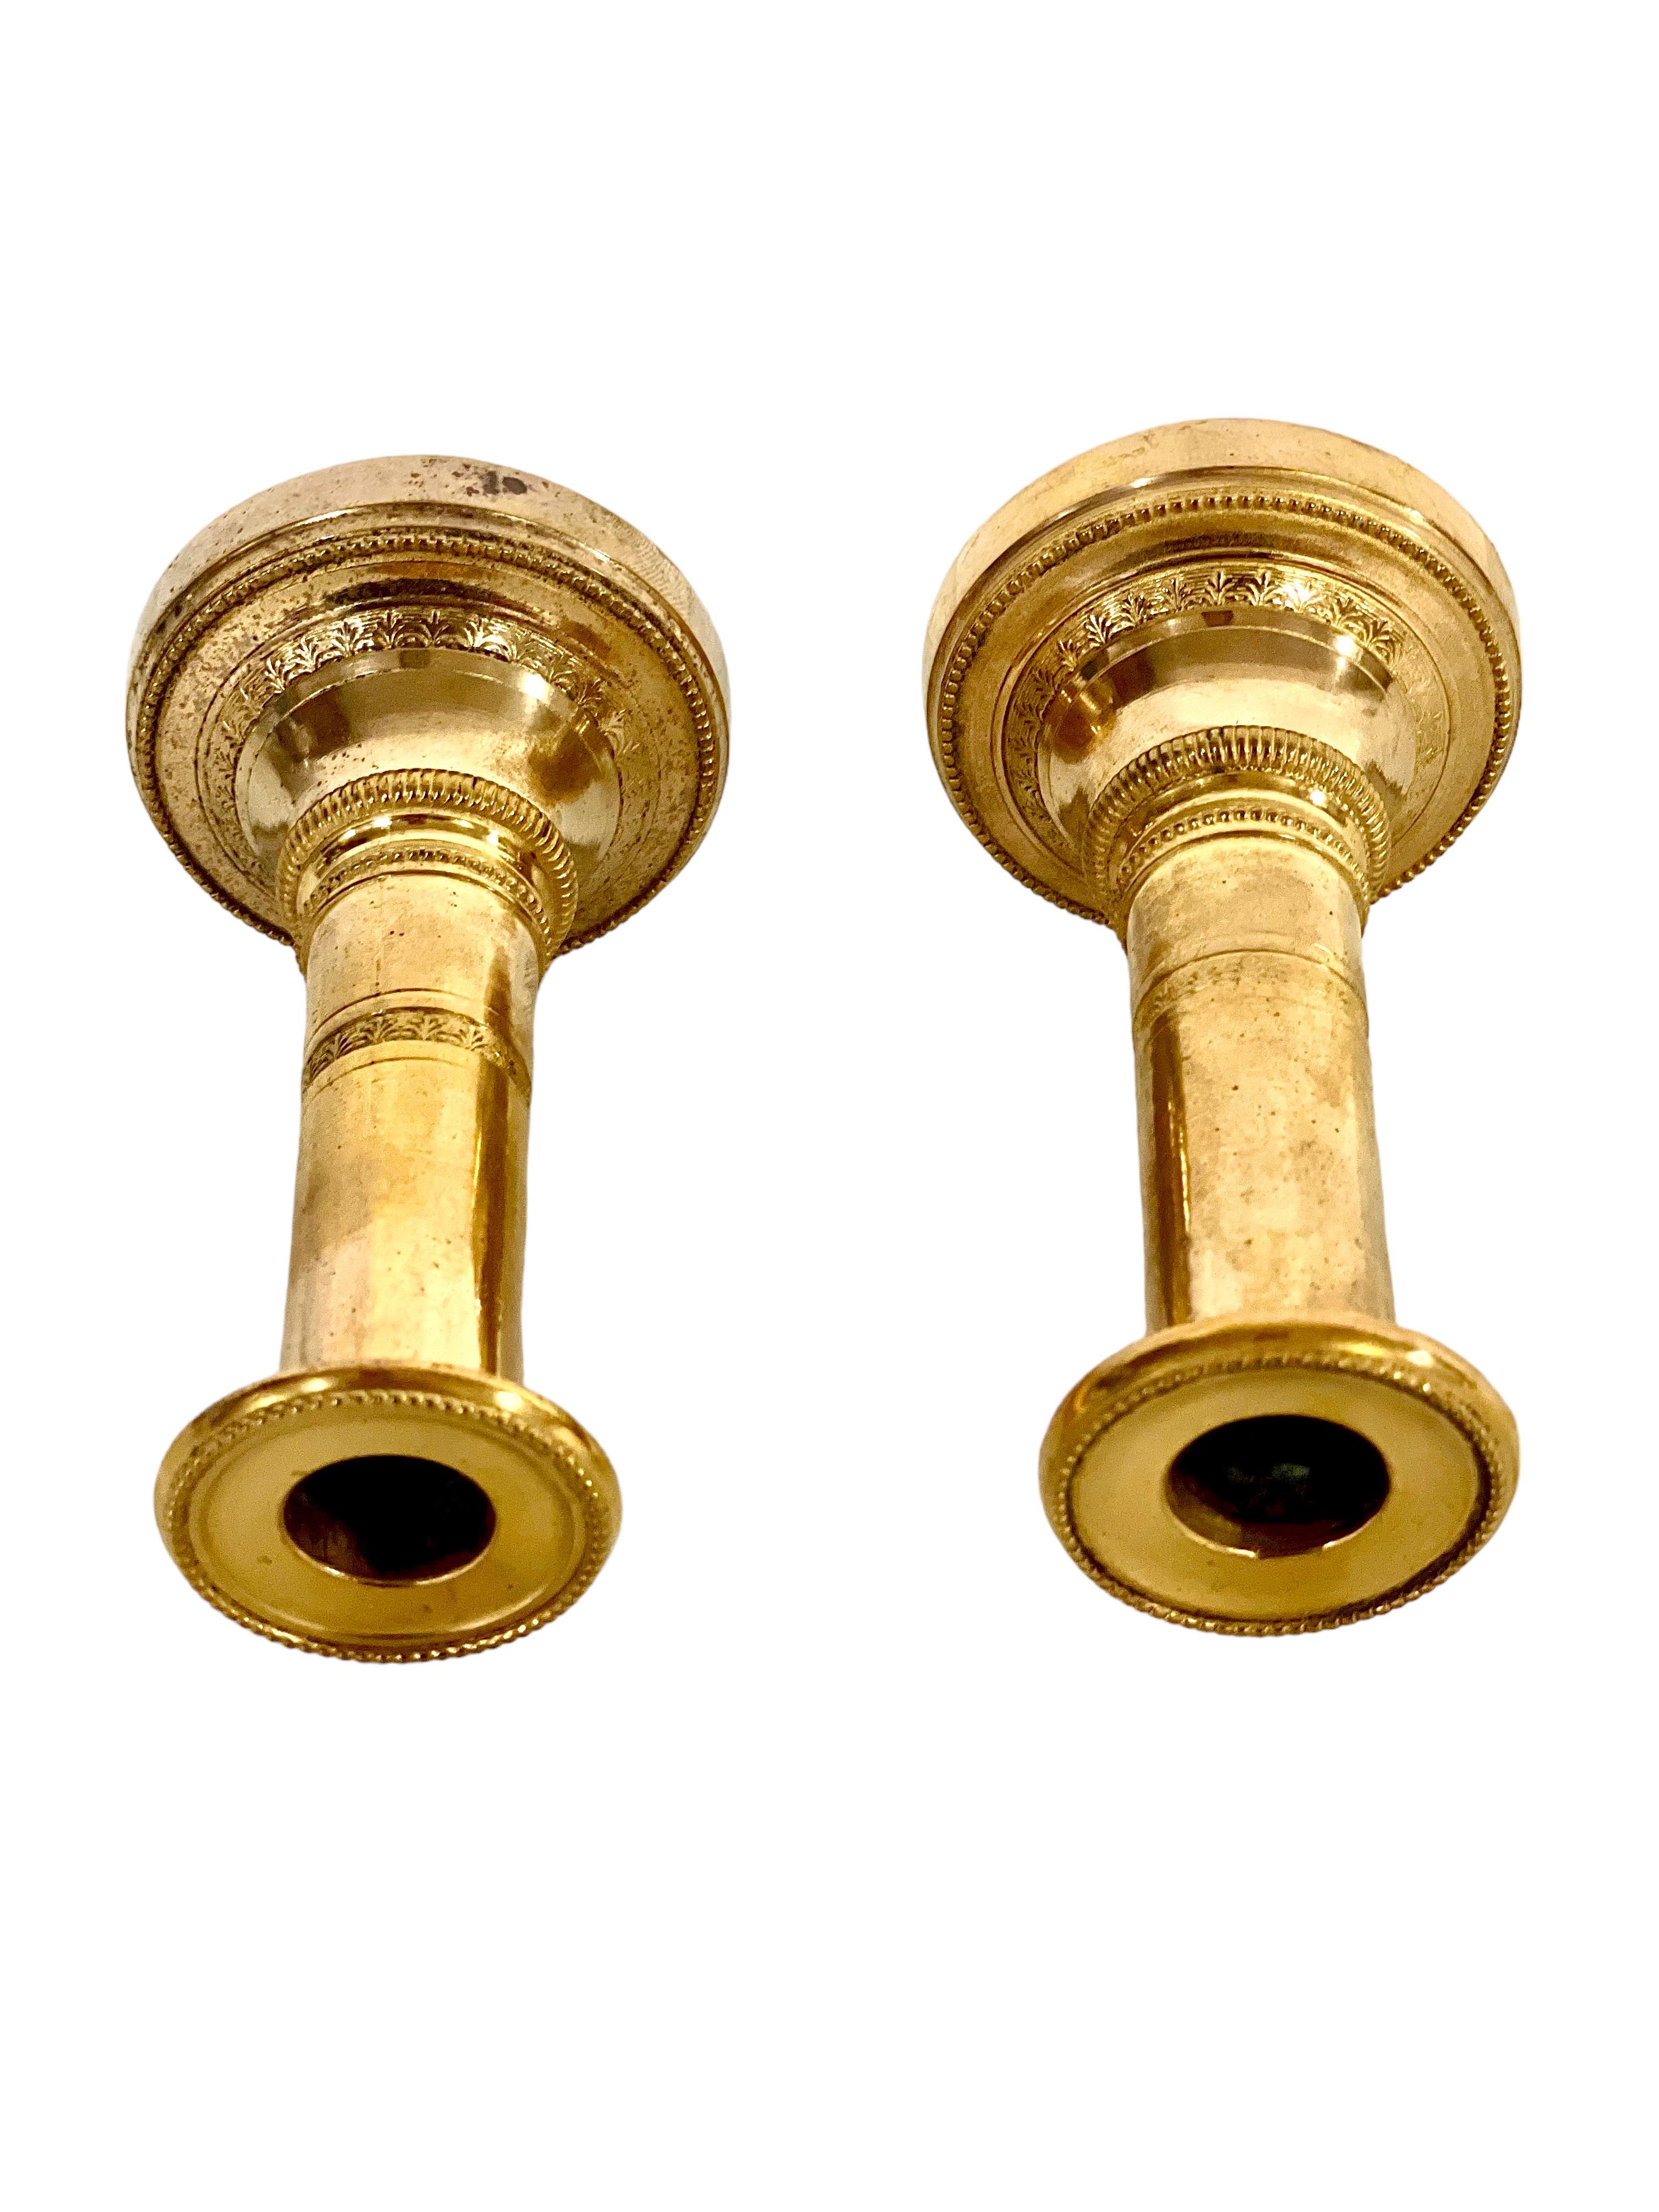 Ein feines Paar vergoldeter Bronze-Kerzenhalter aus dem 19. Jahrhundert in einem einfachen, aber eleganten Design. Mit einer Höhe von ca. 10 cm ruht jeder dieser zierlichen Kerzenhalter auf einem runden Sockel, der mit einem klaren und einfachen